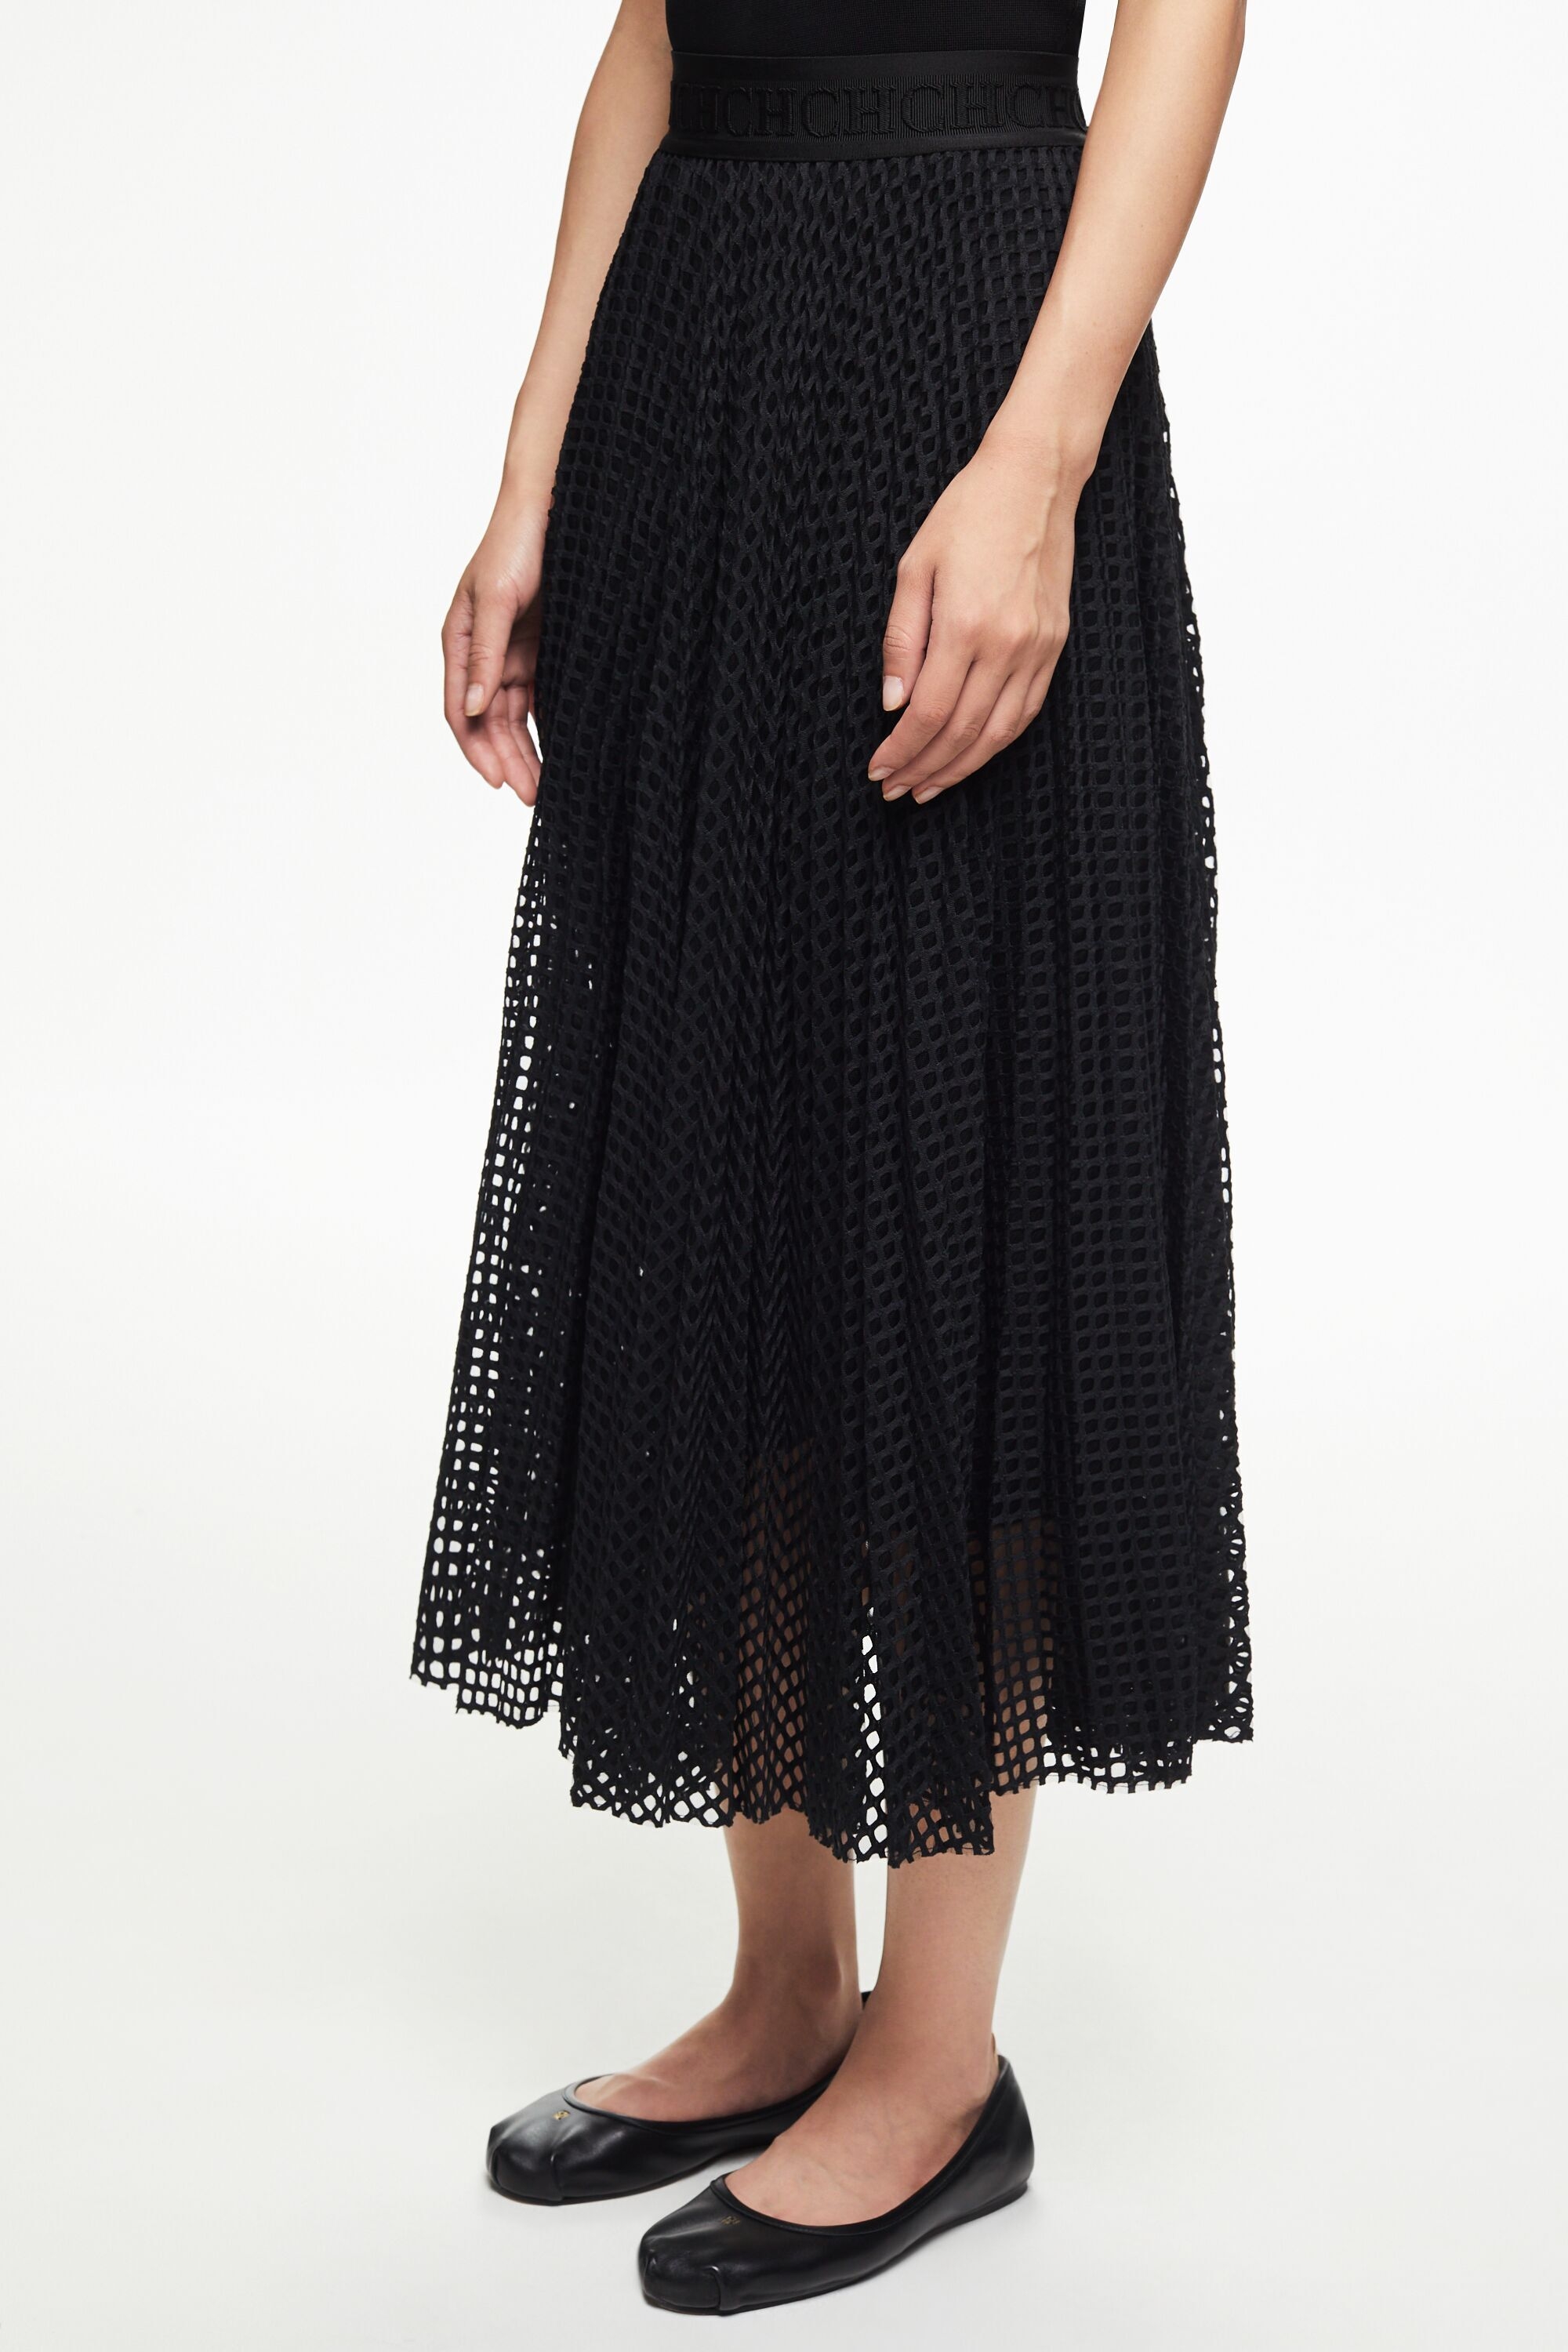 Net pleated skirt